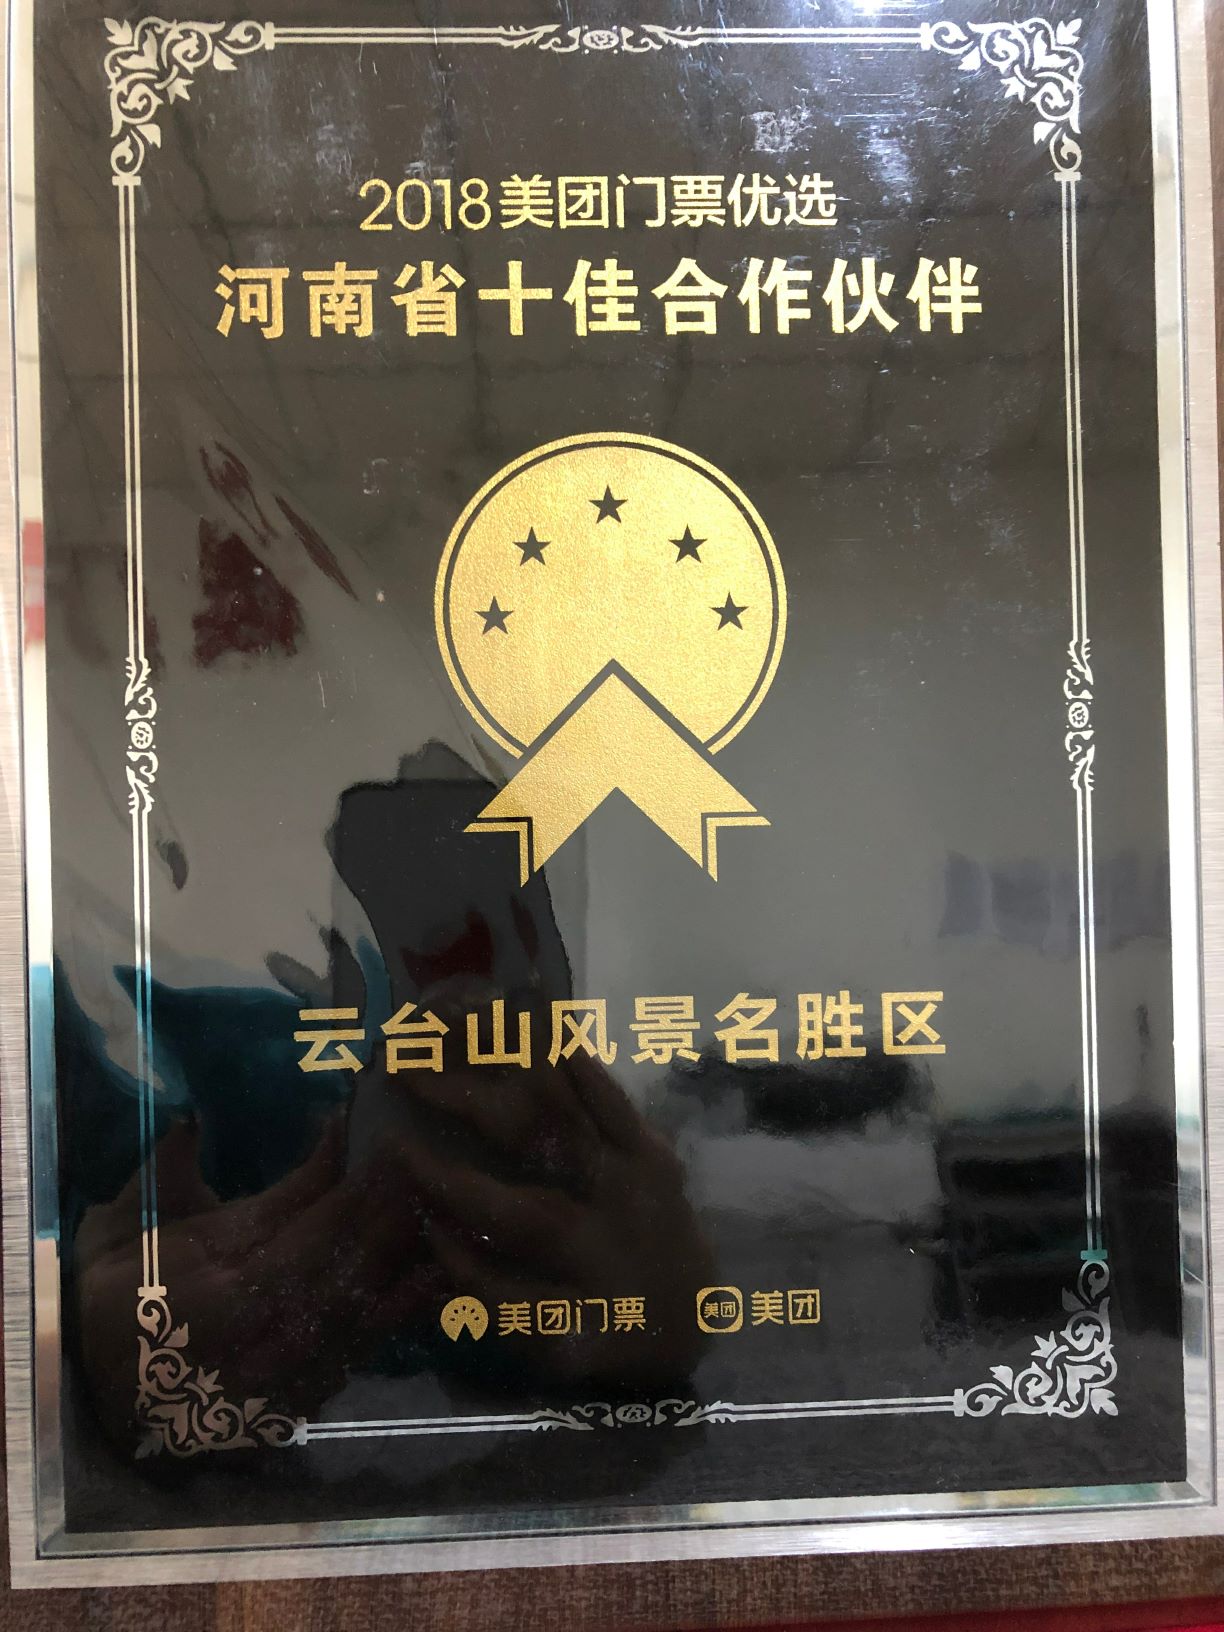 2018 Meituan Ticket Best Ten Partners in Henan Province